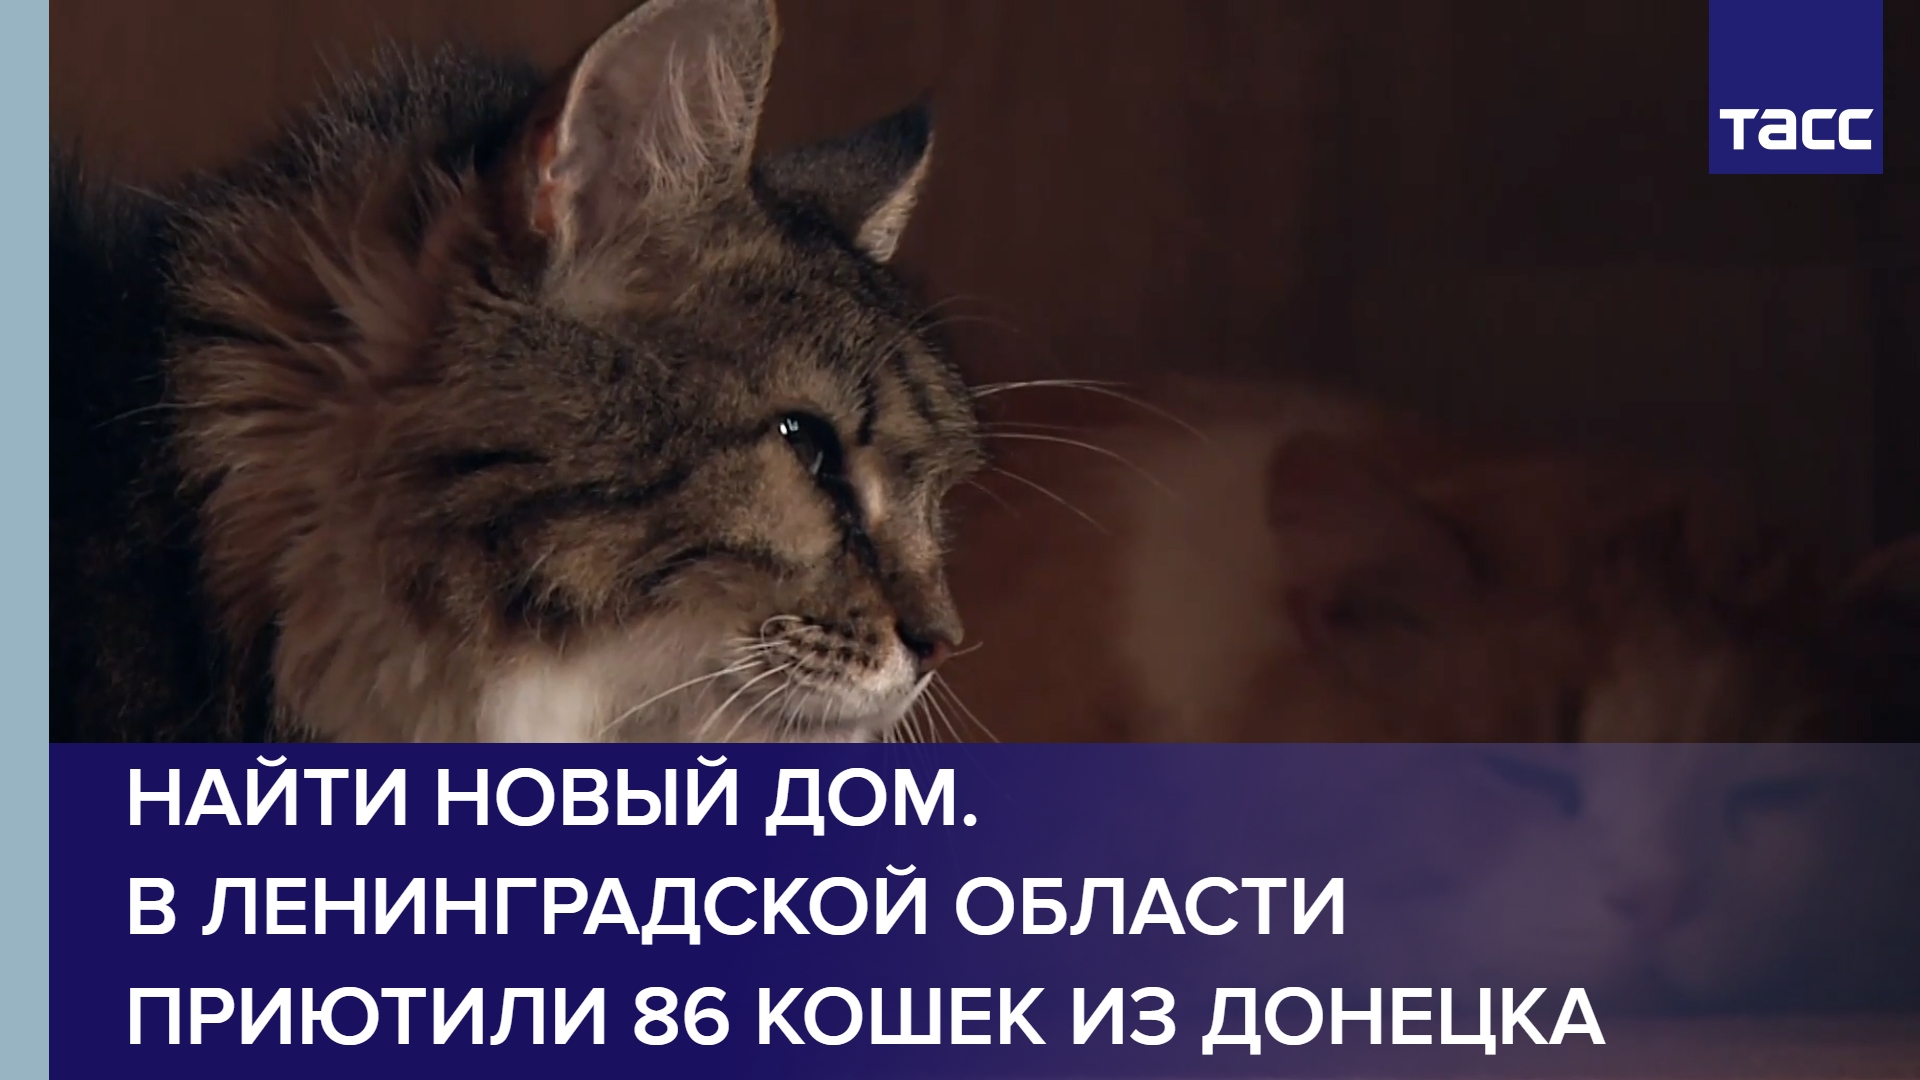 Найти новый дом. В Ленинградской области приютили 86 кошек из Донецка